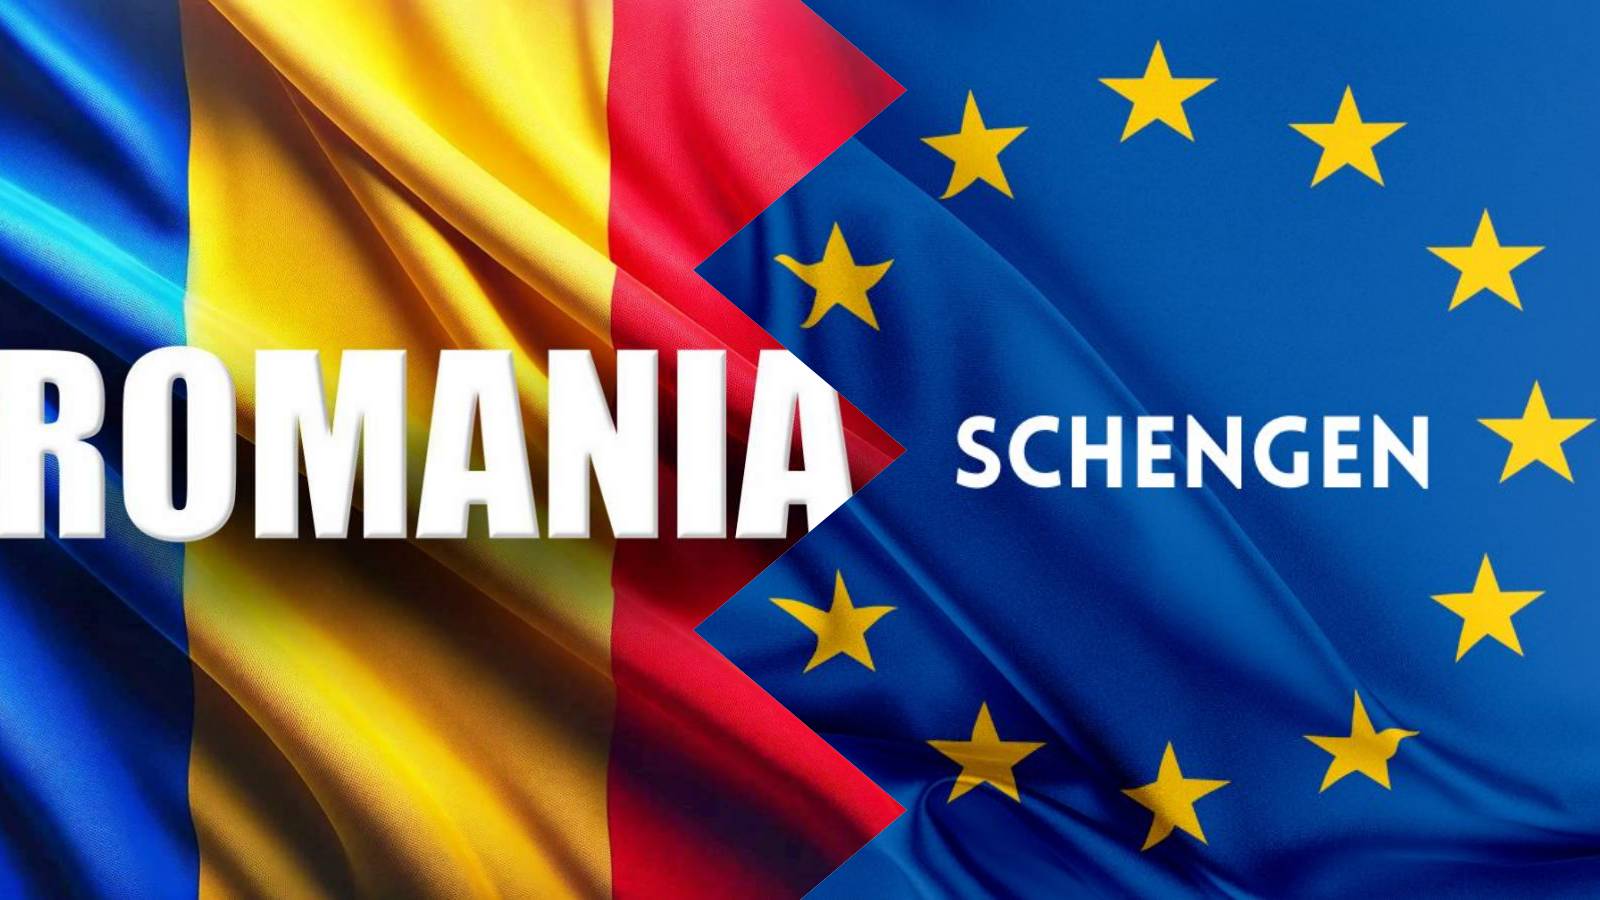 Annuncio dell'ULTIMO MOMENTO Schengen quando la Romania si unirà alla Totalità